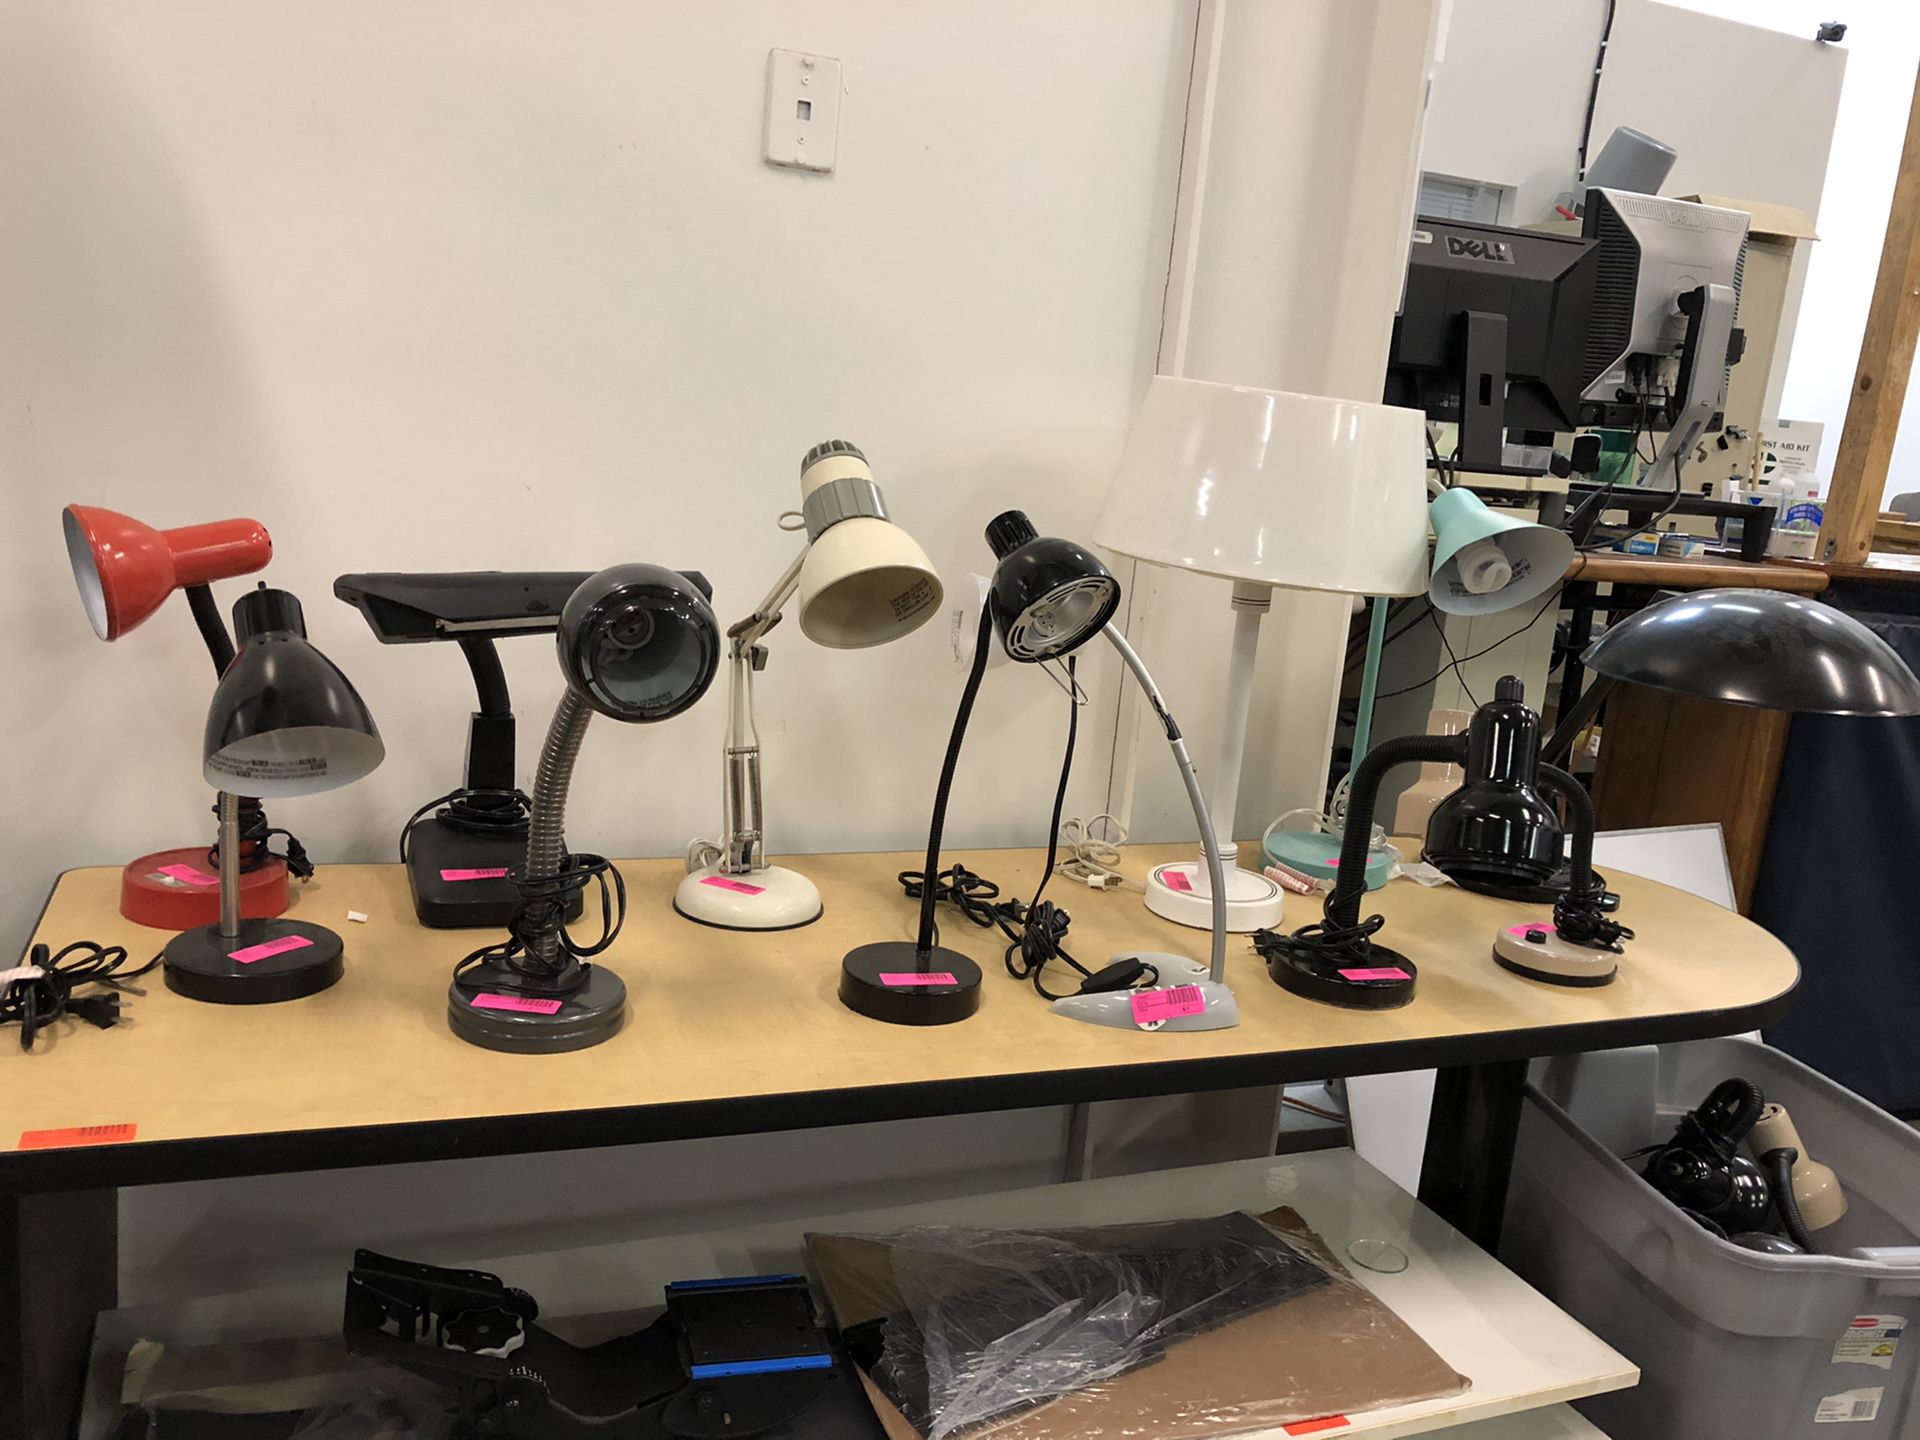 Desk Lamps